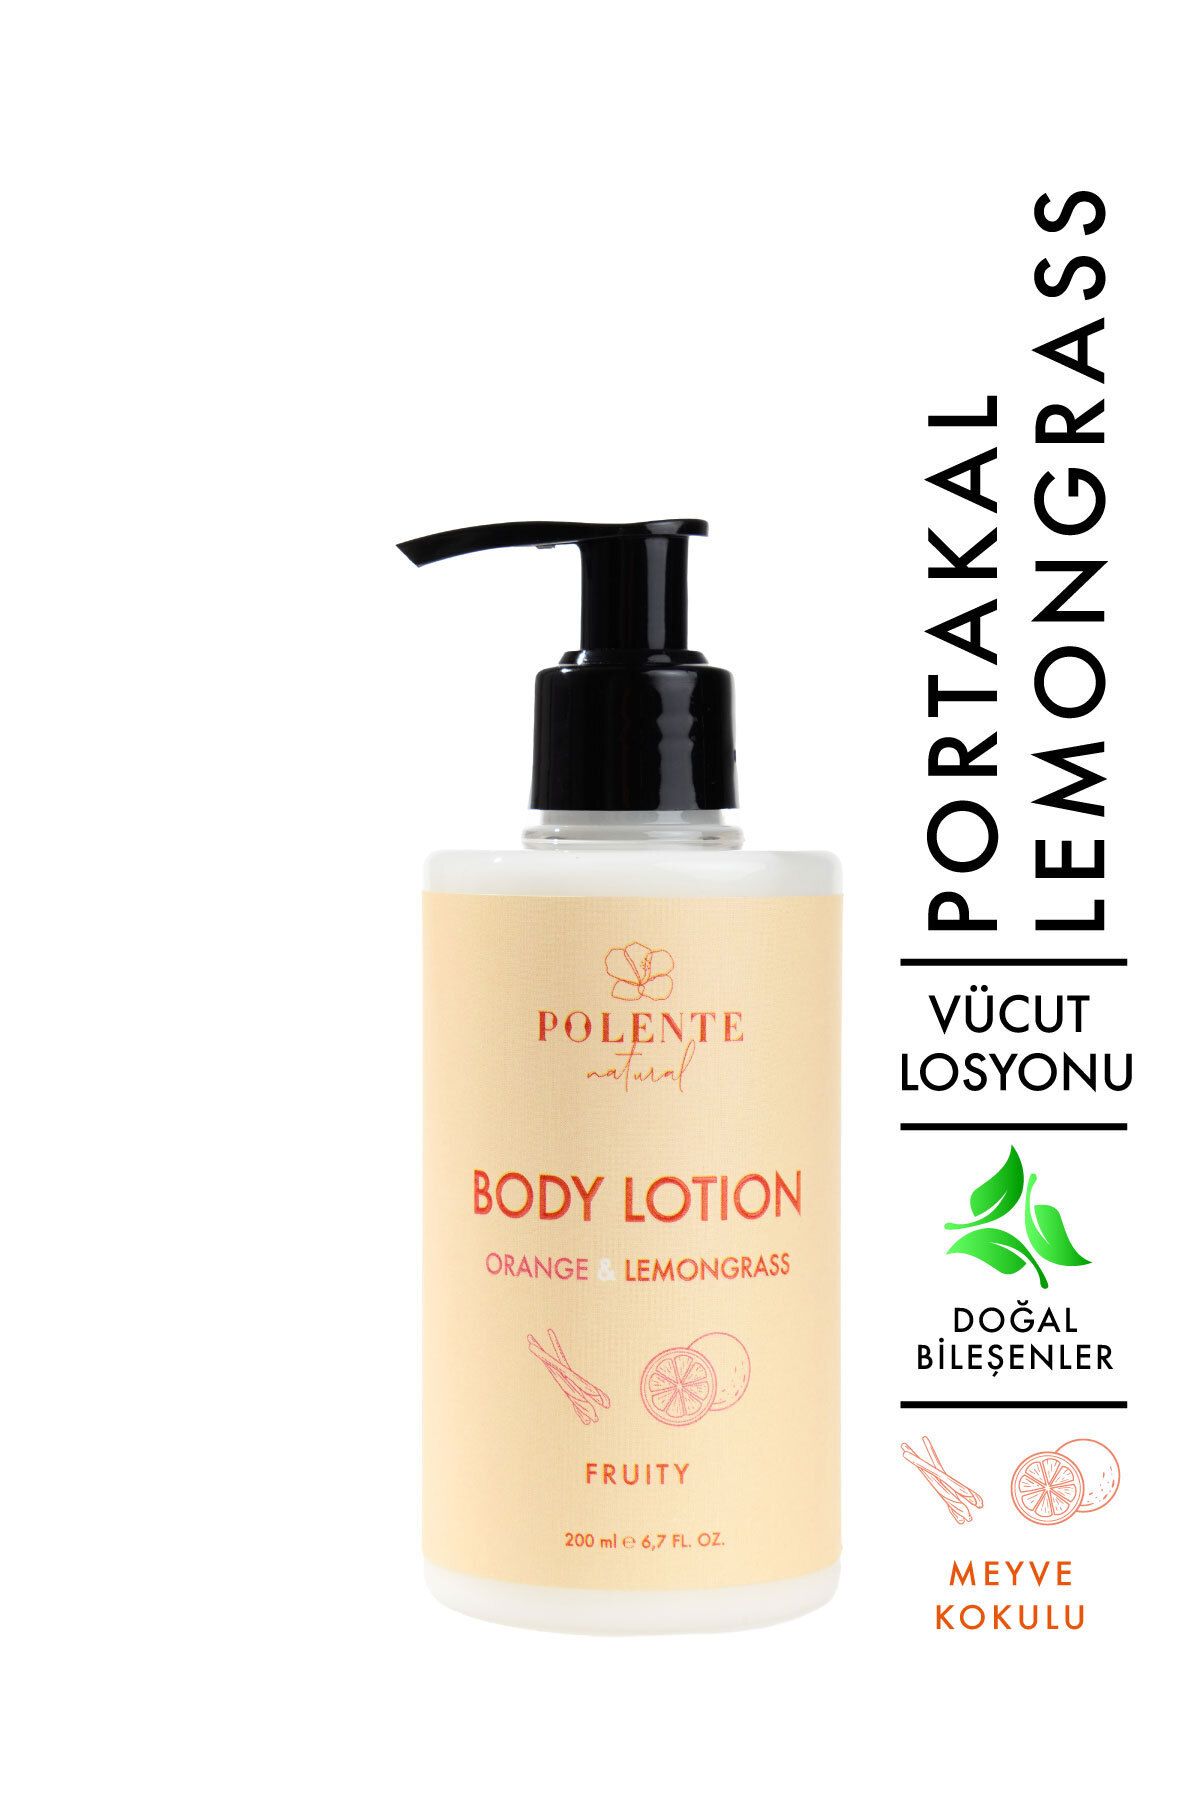 Polente Natural Vücut Losyonu- Portakal & Limon Otu